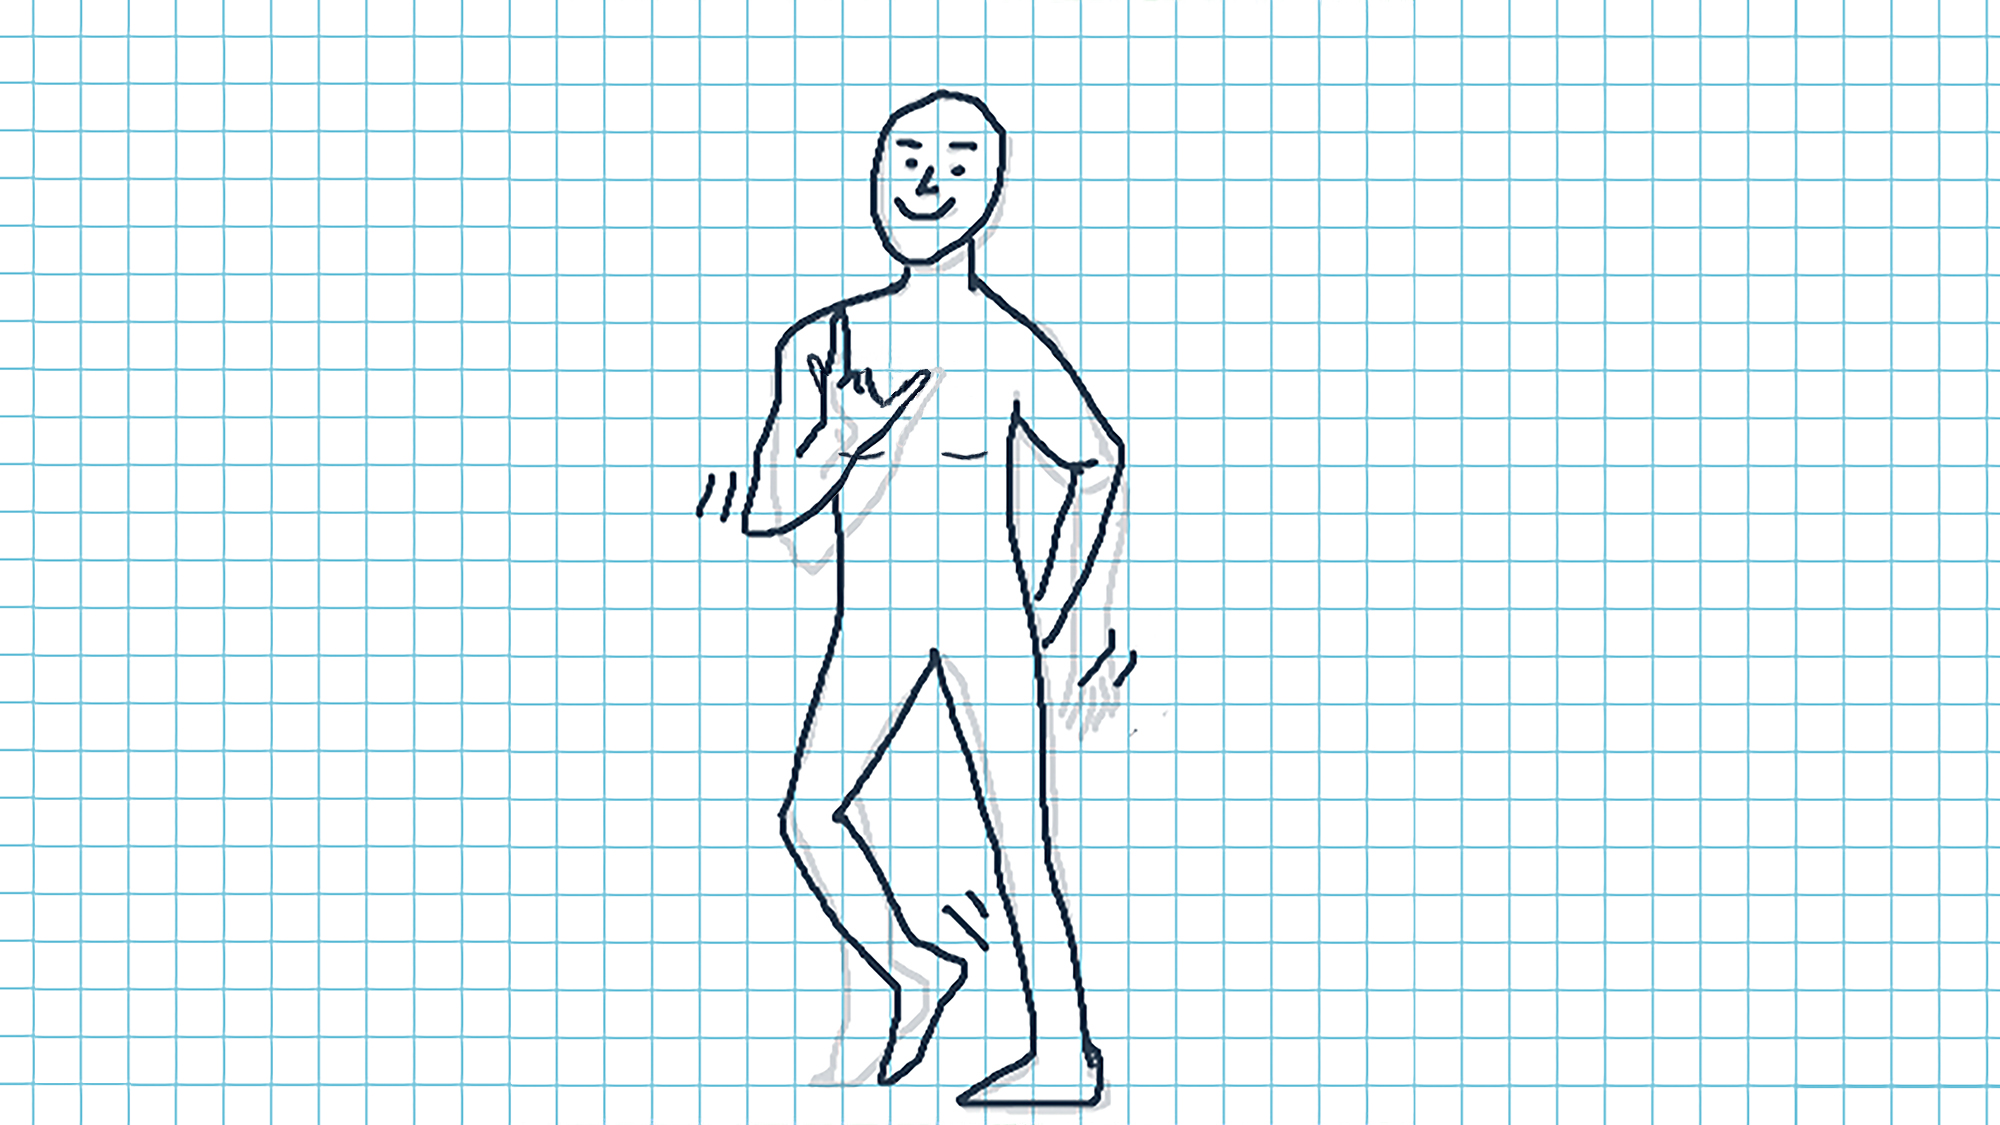 De afbeelding toont een schets van een staande persoon die een rock-’n-roll-beweging maakt. De linkerhand is verborgen achter de rug, één been is in beweging. Lijnen rond de figuur benadrukken de beweging.